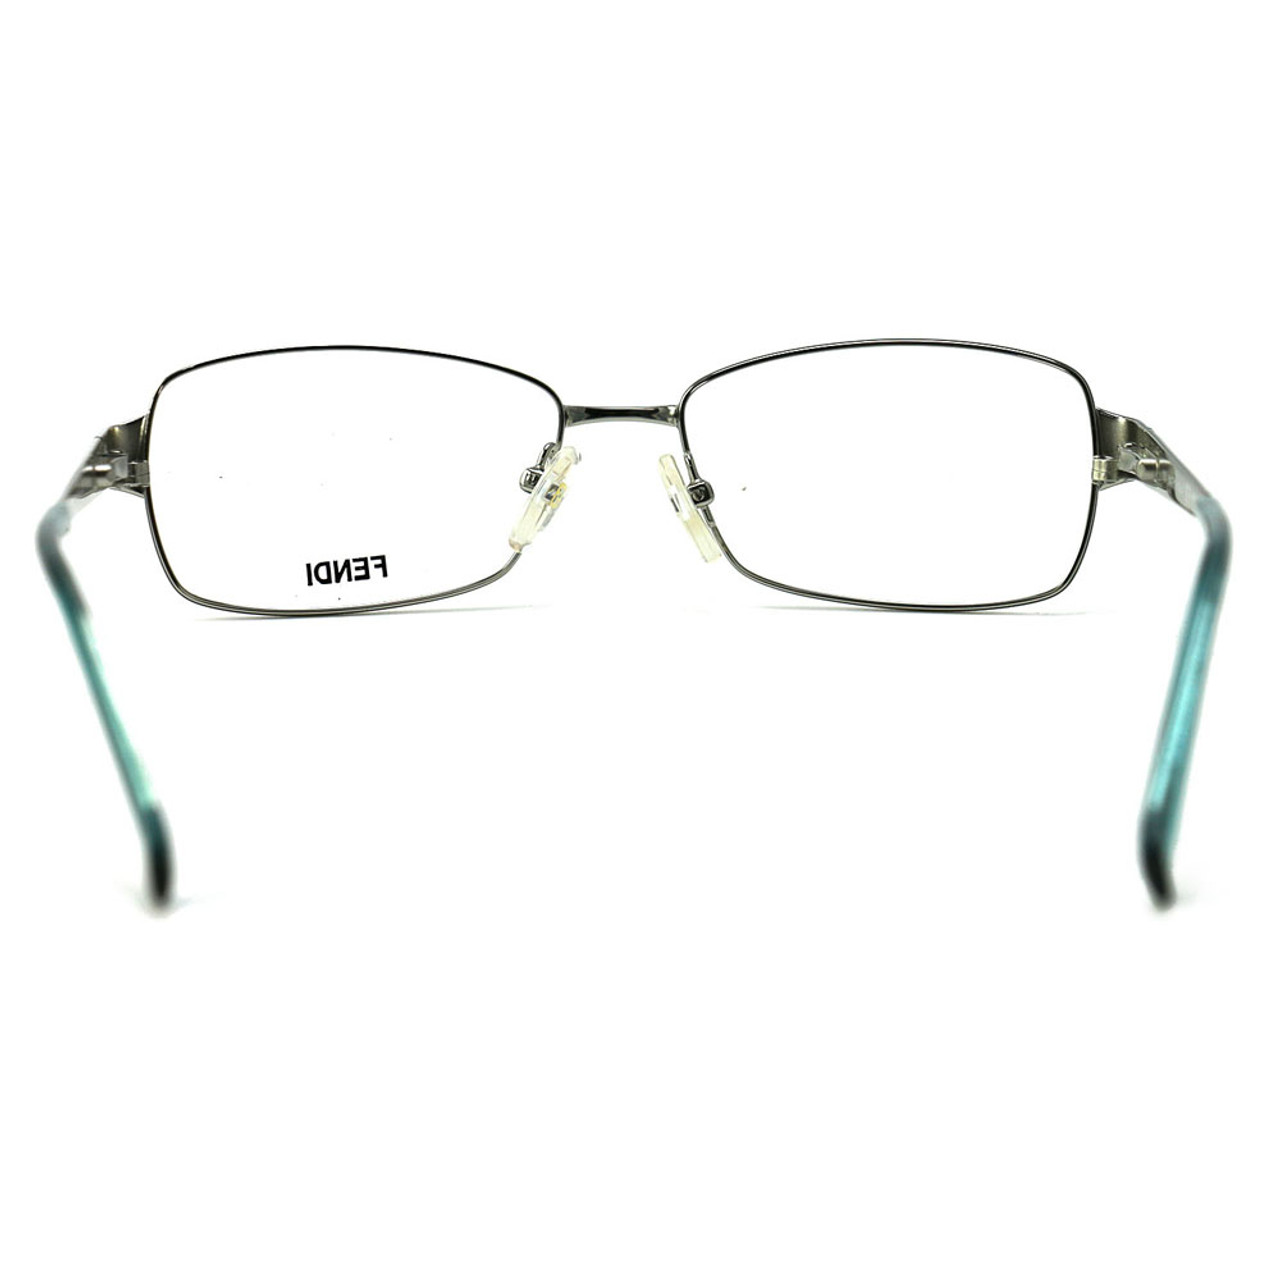 Fendi Women's Shiny Silver/Turquoise Rectangular Eyeglasses product image